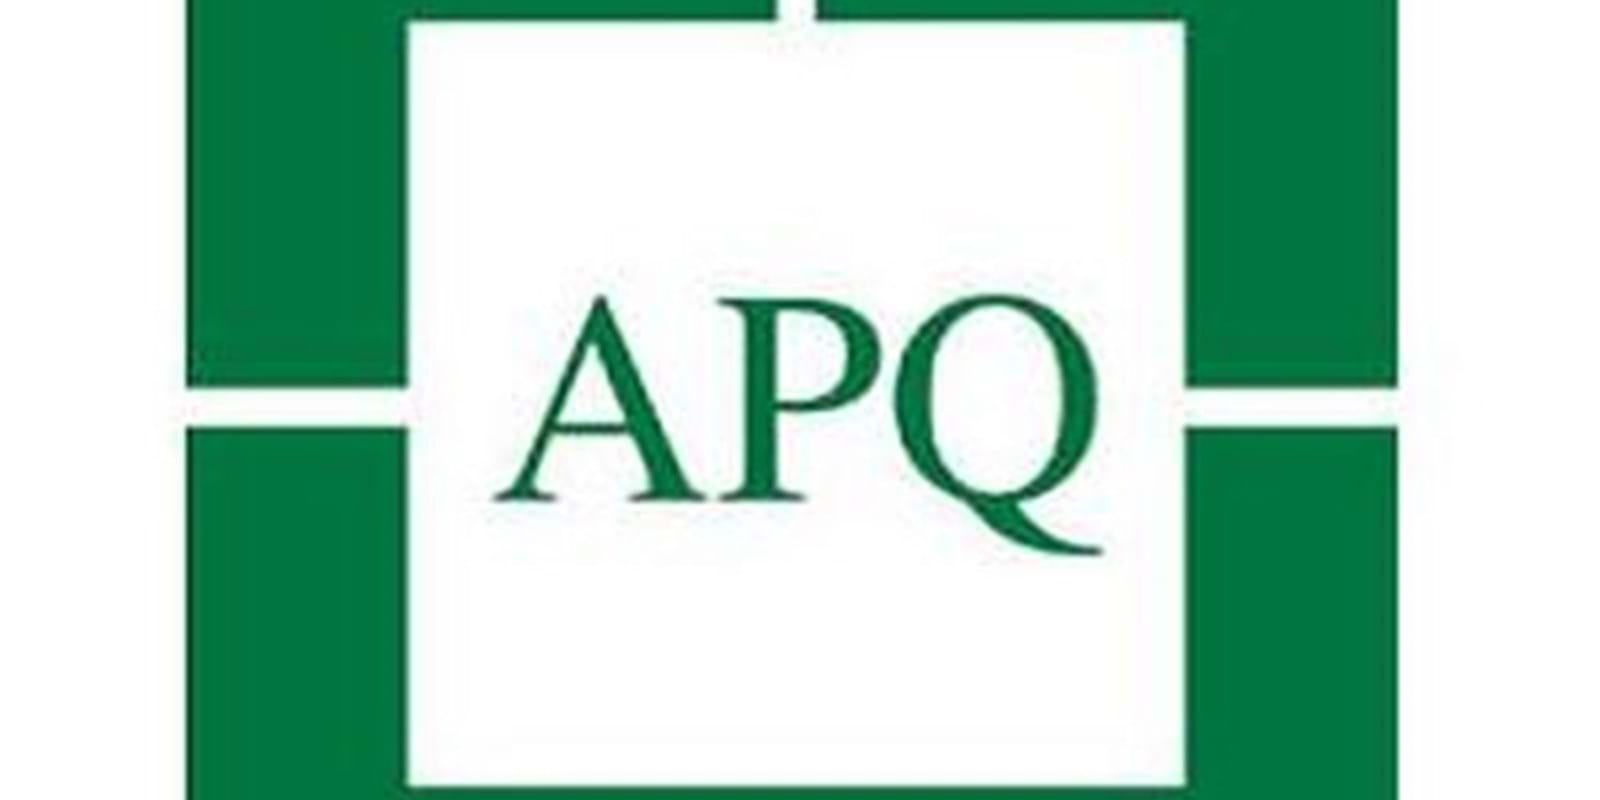 L’Association des Propriétaires du Québec (APQ) s’indigne de la demande du RCLALQ qui demande un registre inutile à 35 millions !

